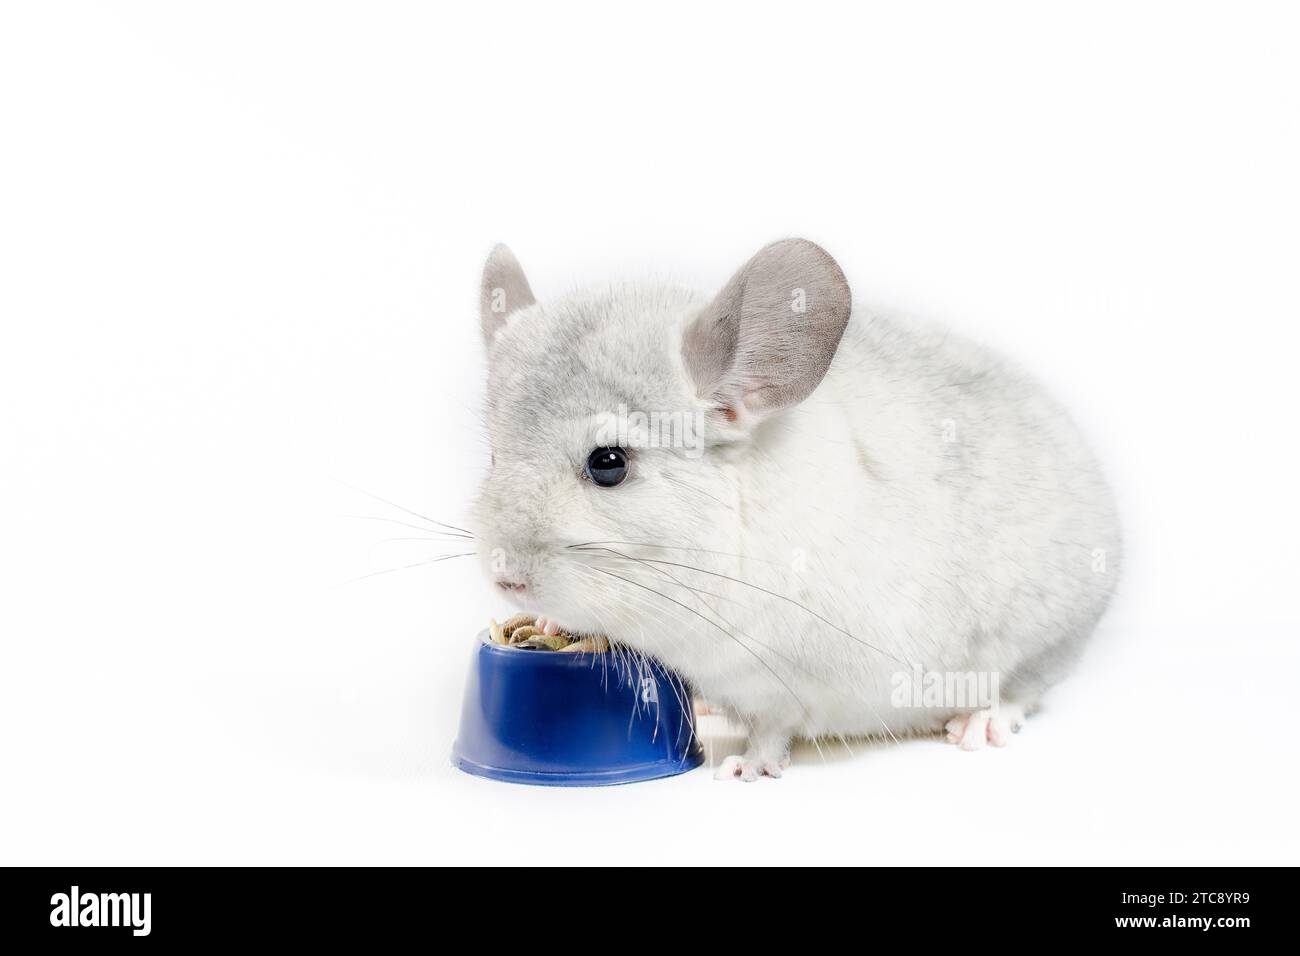 Le chinchilla blanc mange sa nourriture dans un bol bleu sur fond blanc Banque D'Images